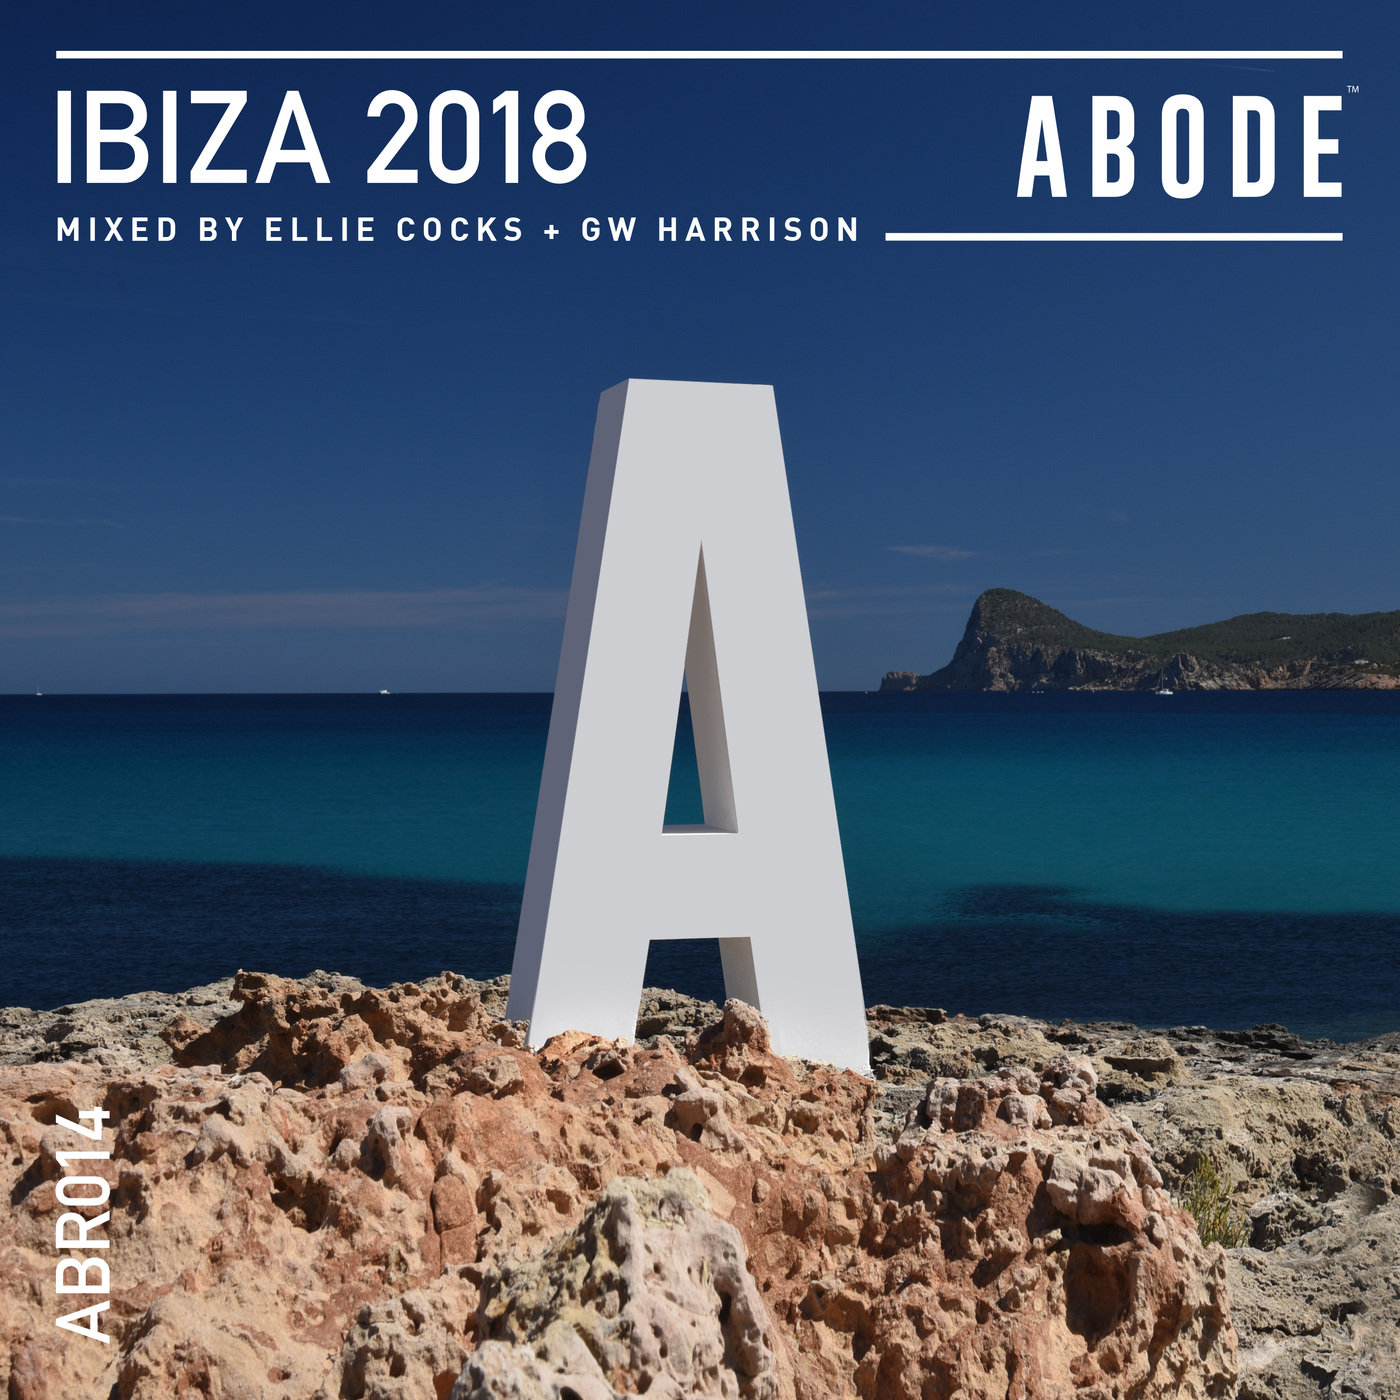 image cover: ABODE Ibiza 2018 / ABODE Records